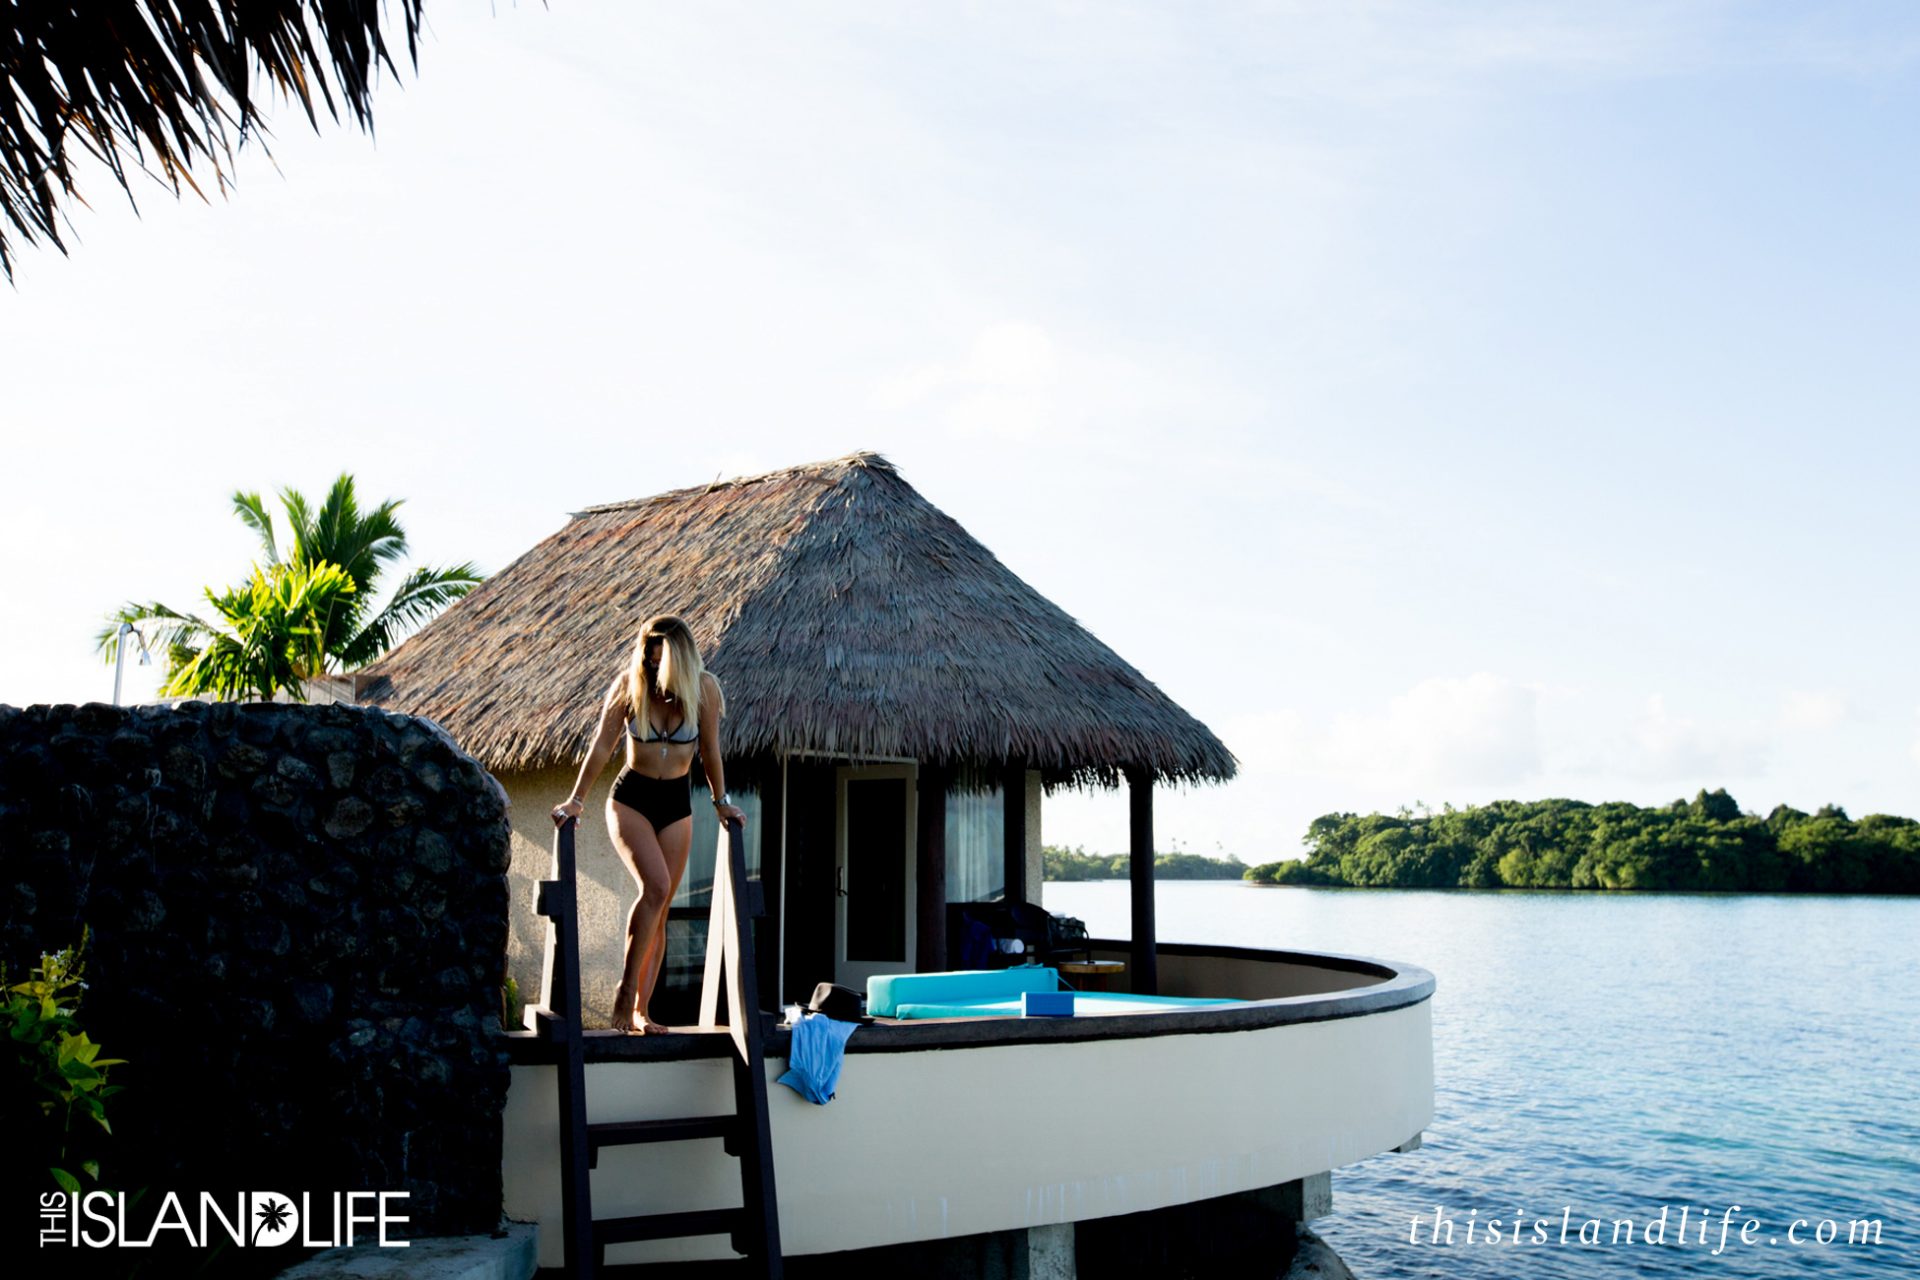 THIS ISLAND LIFE | On island time with Nixon in Fiji